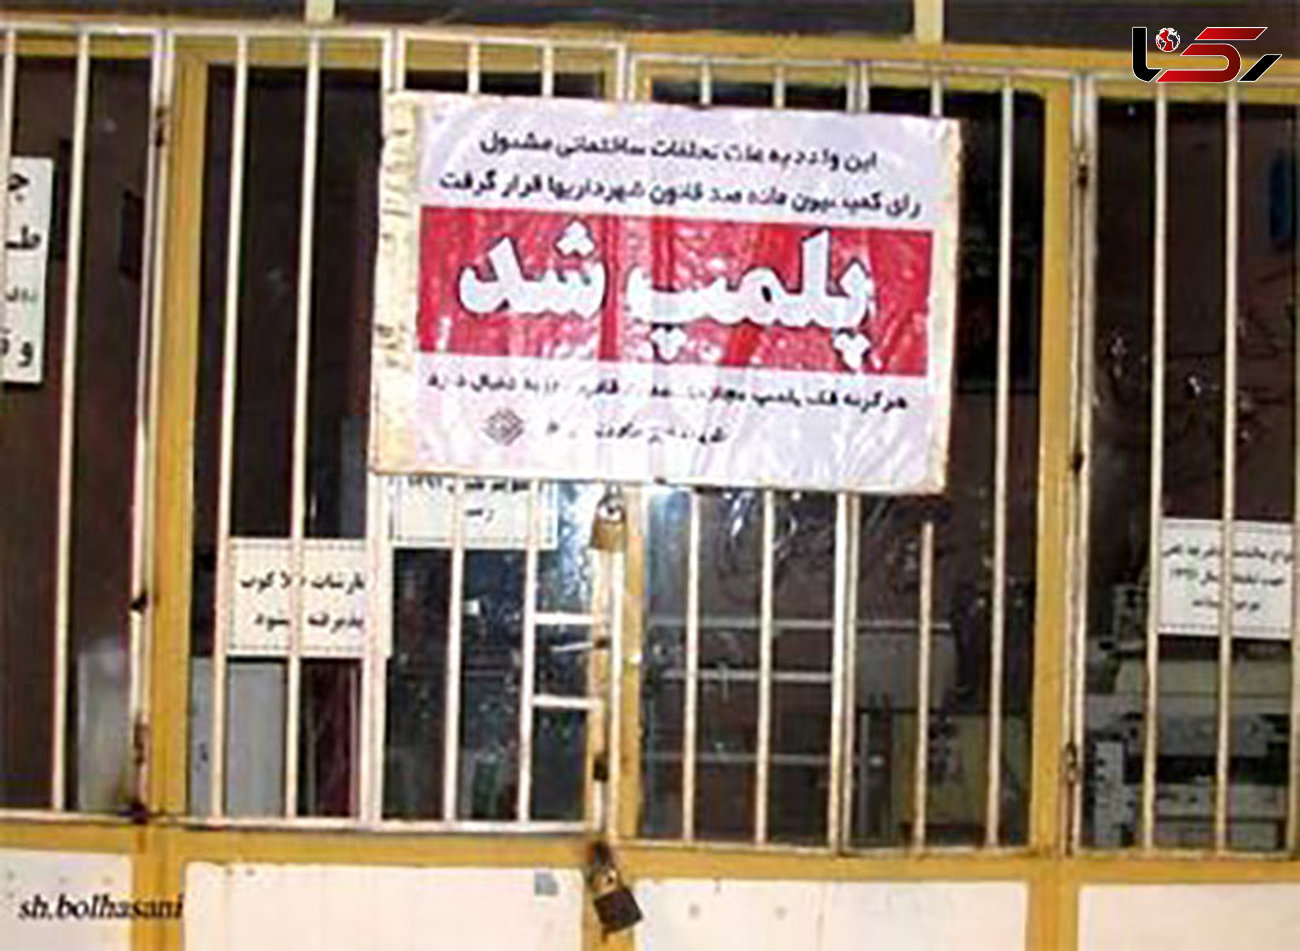 حرکات زشت زنان و مردان در کافه خیابان فردوسی  / پلیس سر رسید